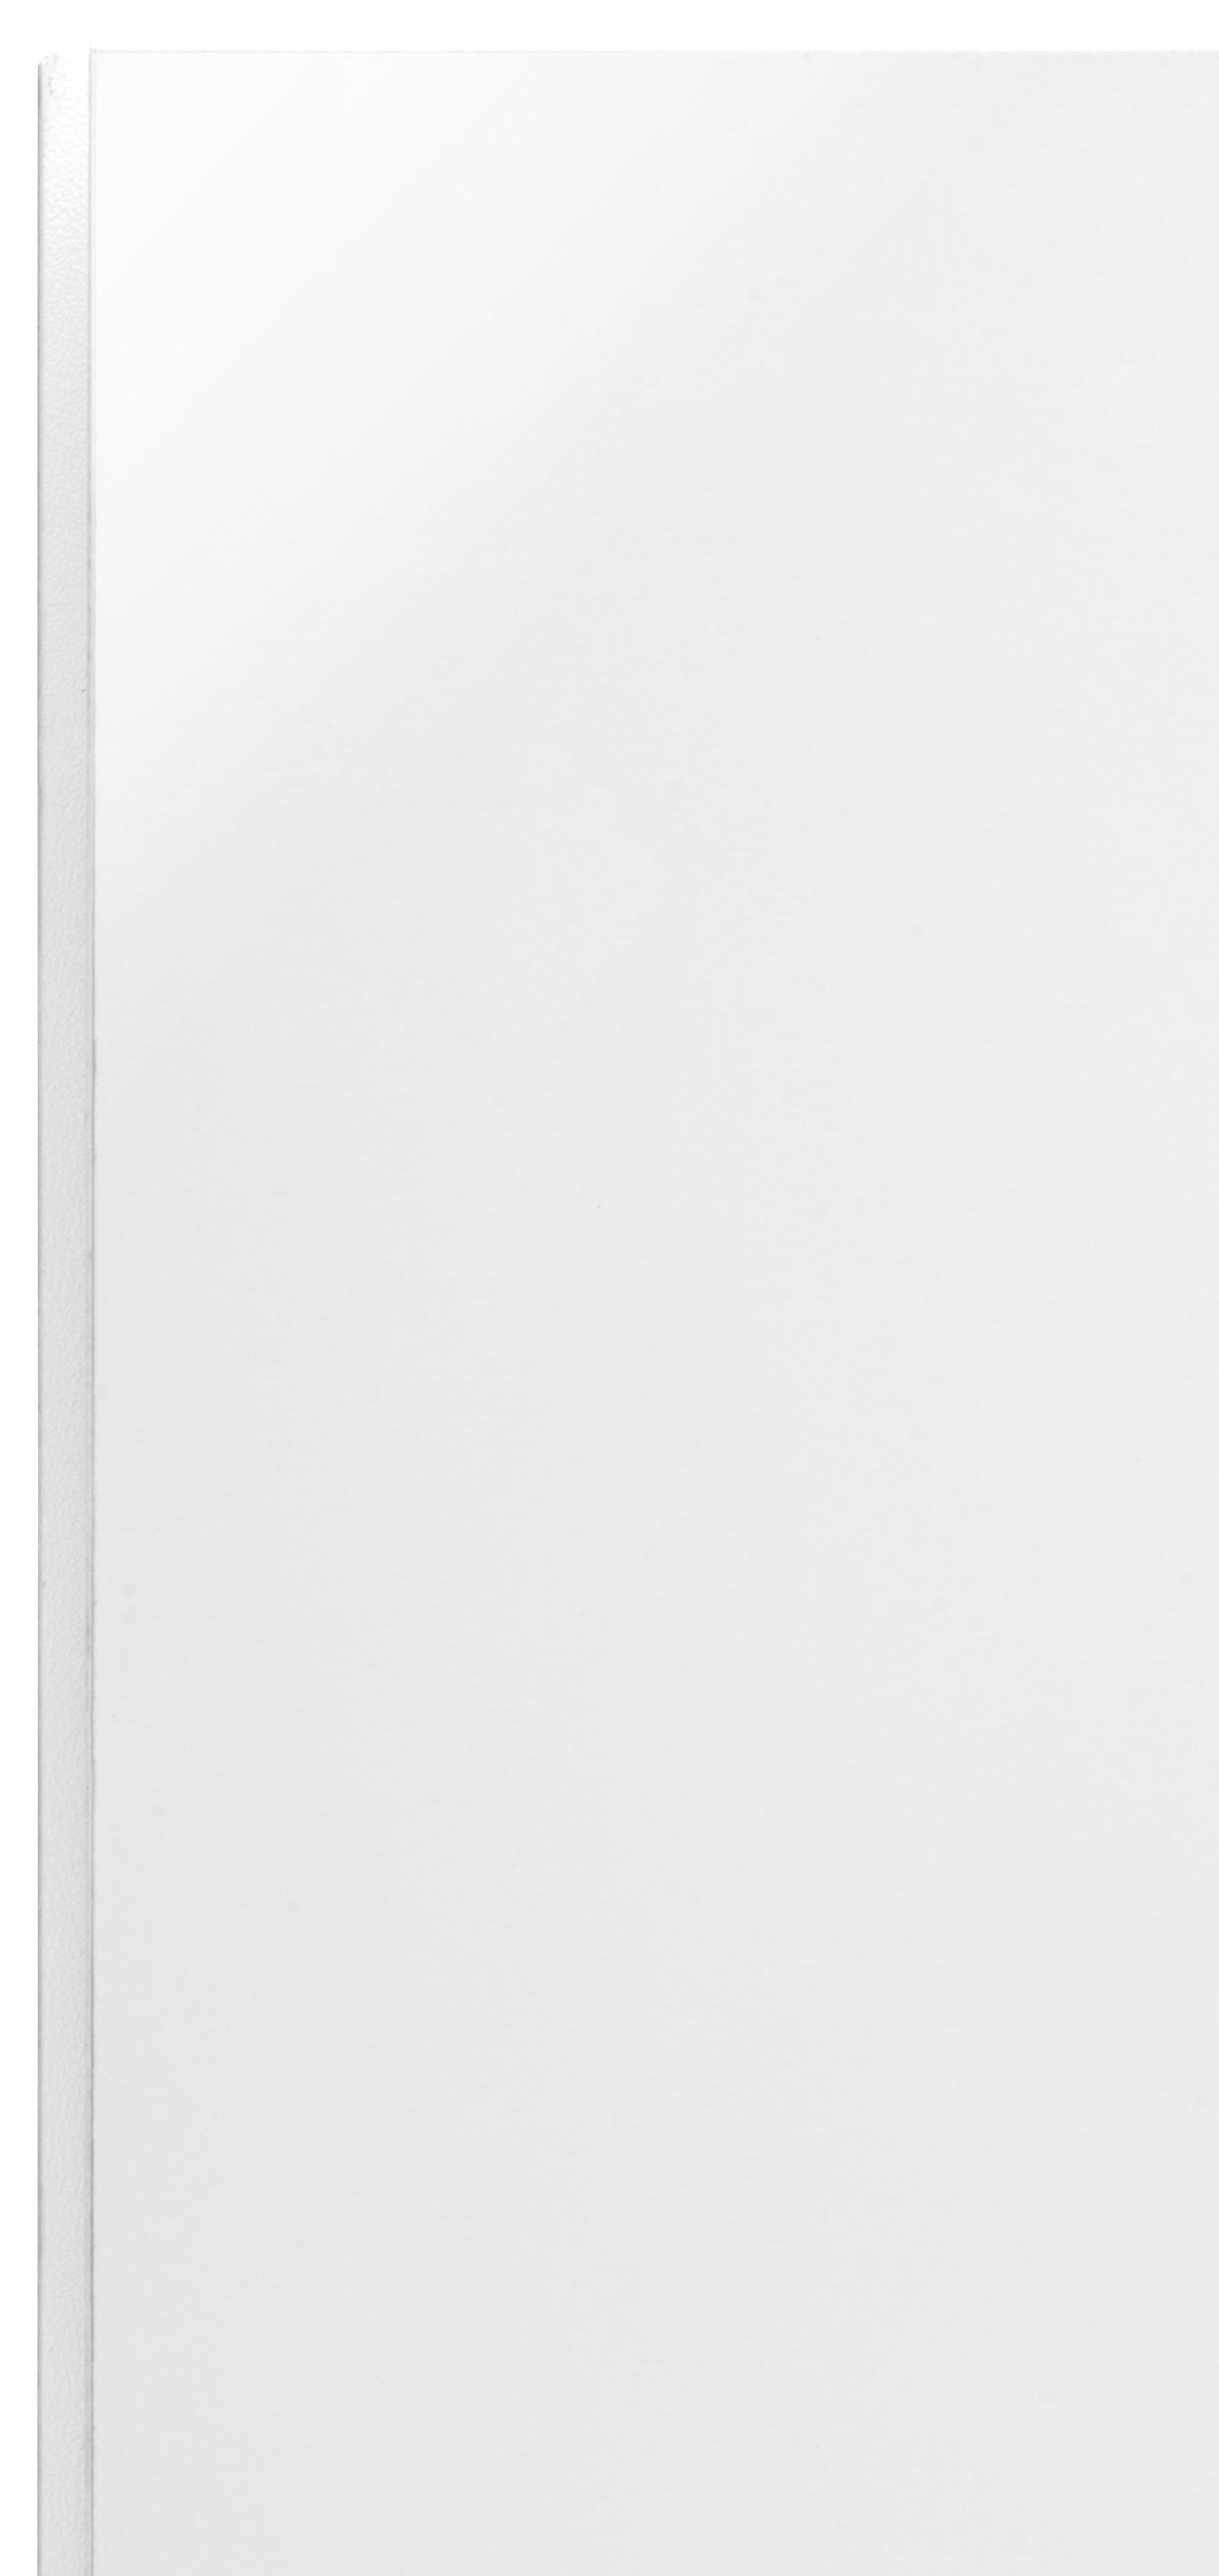 Küchen 1 weiß wechselbar Glanz/weiß Tür, Hängeschrank wiho mit Flexi2 60 cm, rechts/links Breite